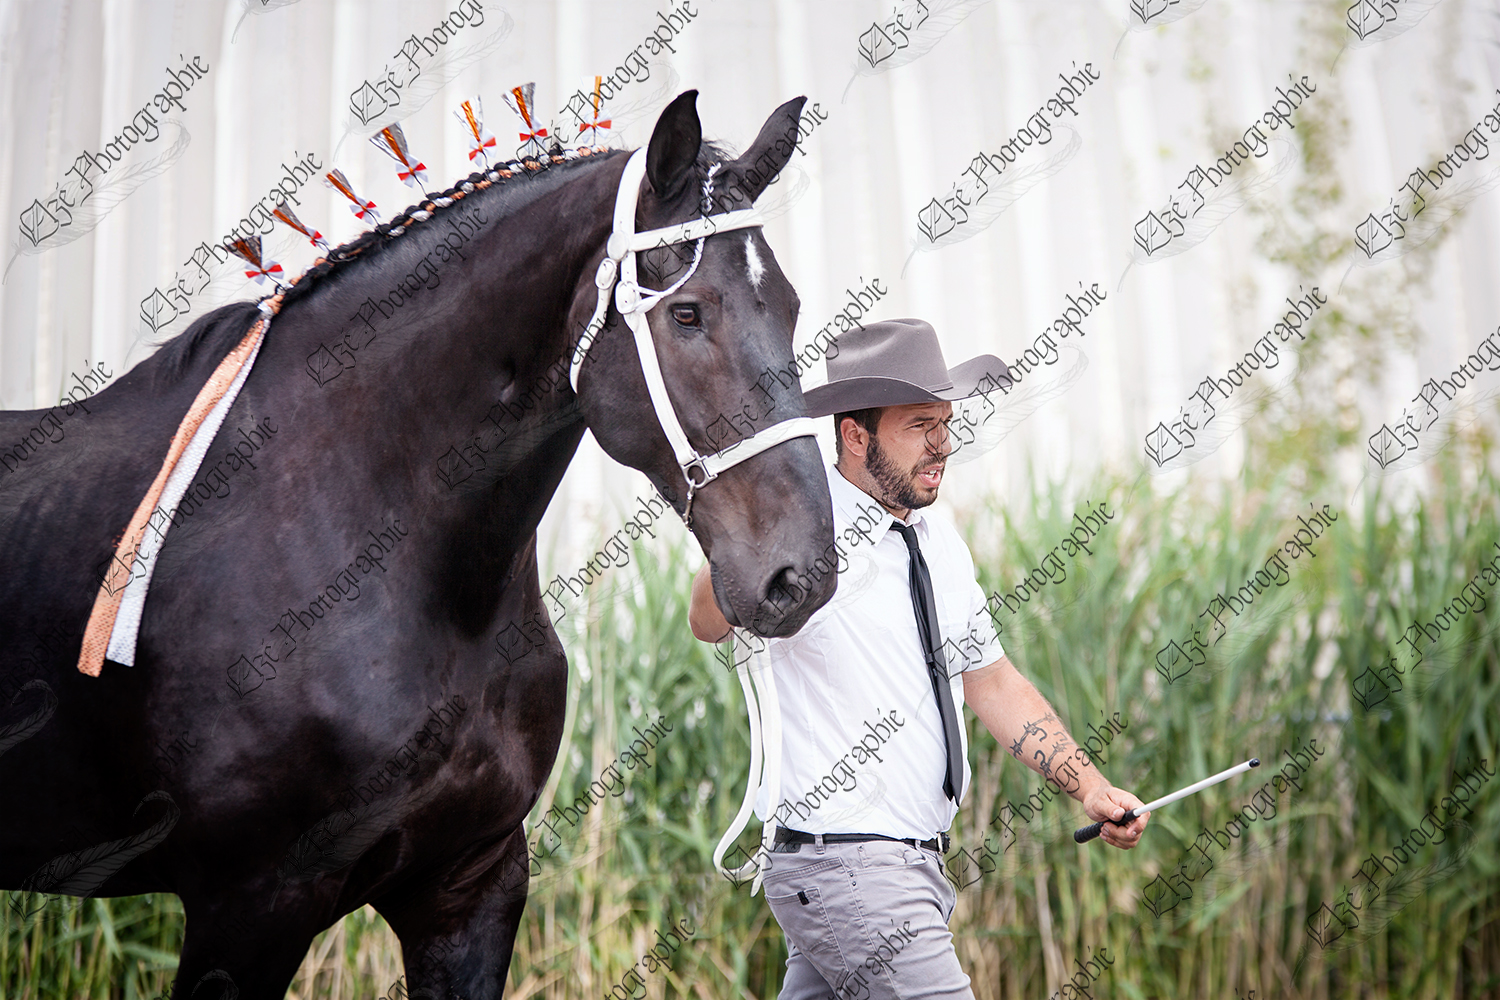 elze_photo_6607_jugement_race_eleveur_black_horse_percheron